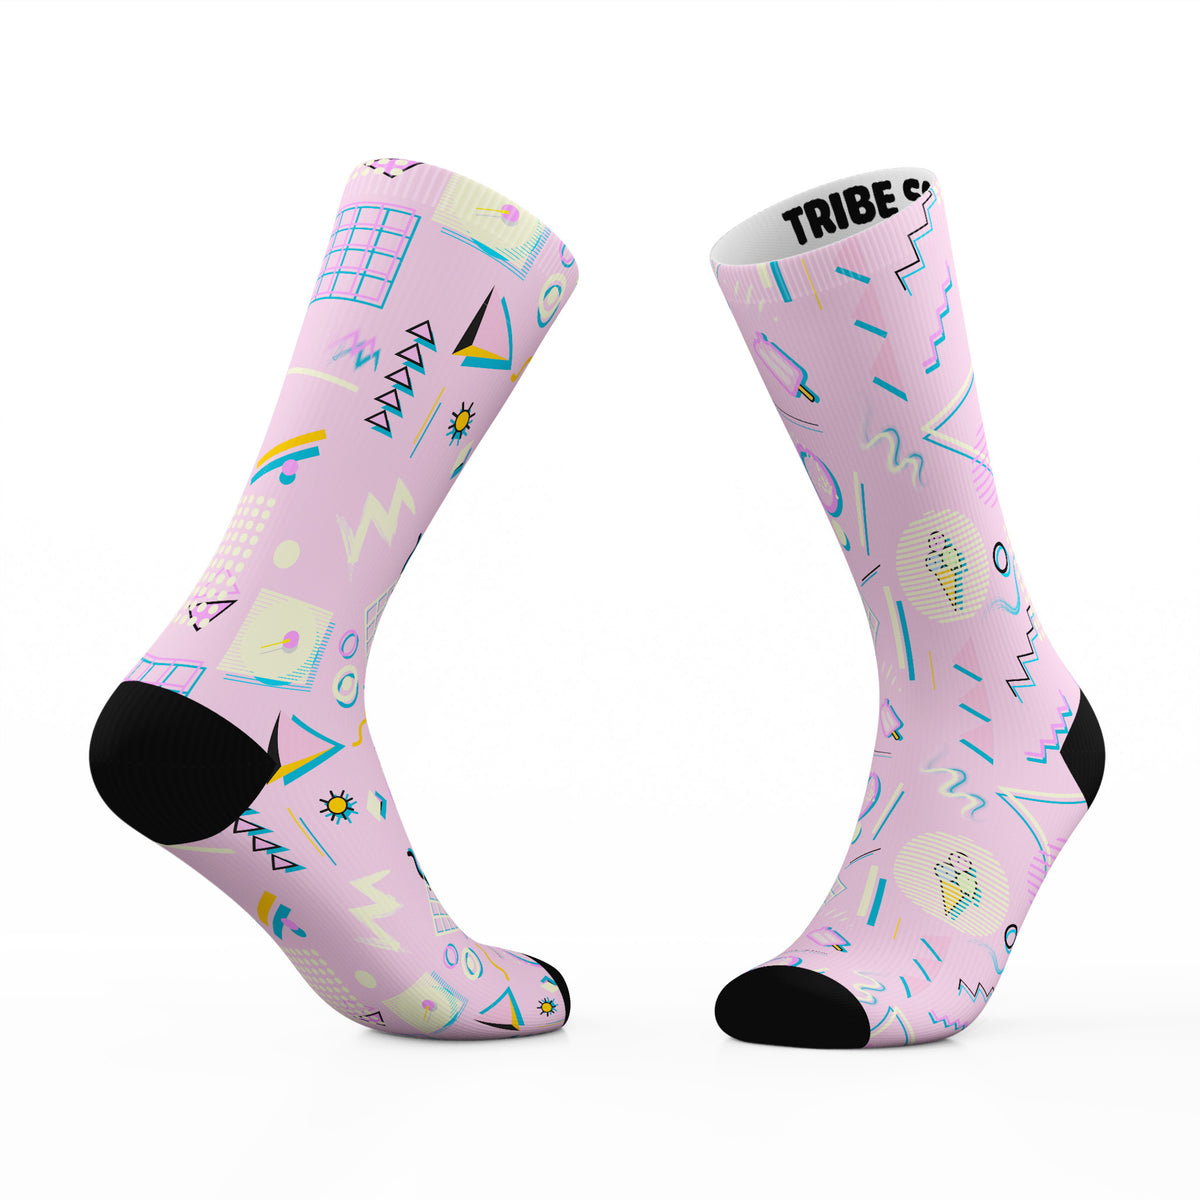 | Cream Socks Ice 80s Tribe Socks